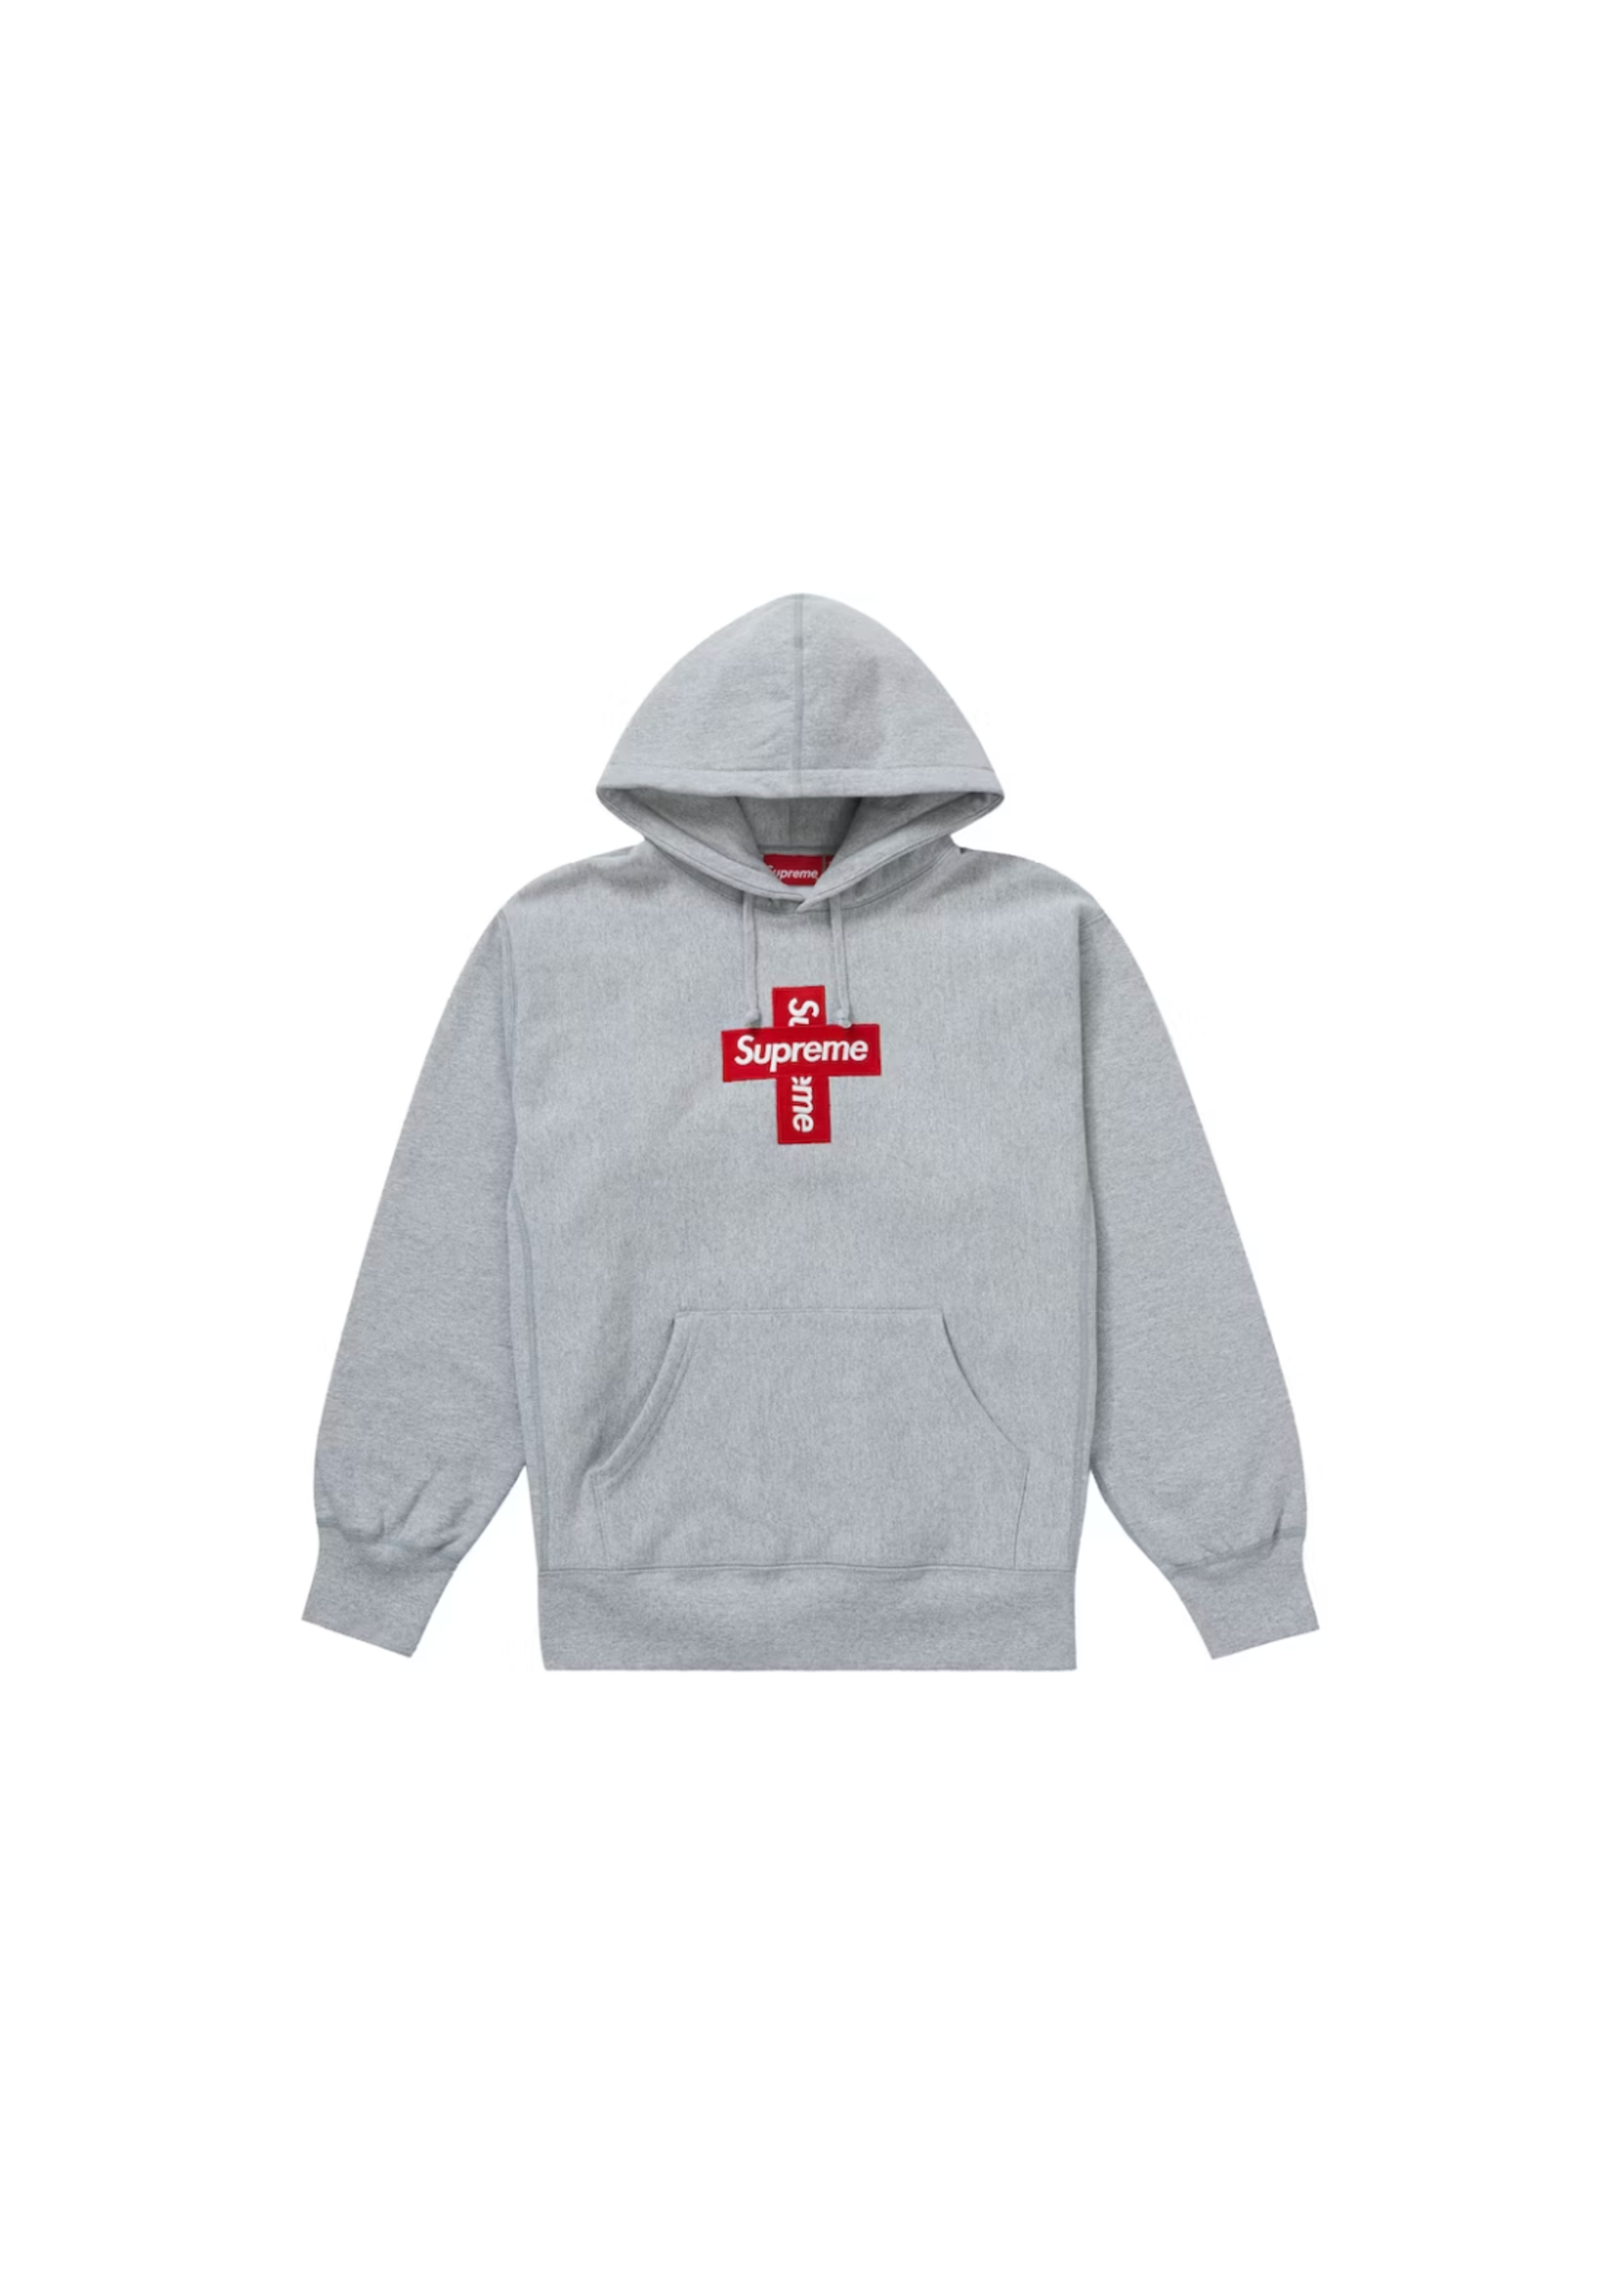 Supreme Supreme Cross Box Logo Hooded Sweatshirt Heather Grey